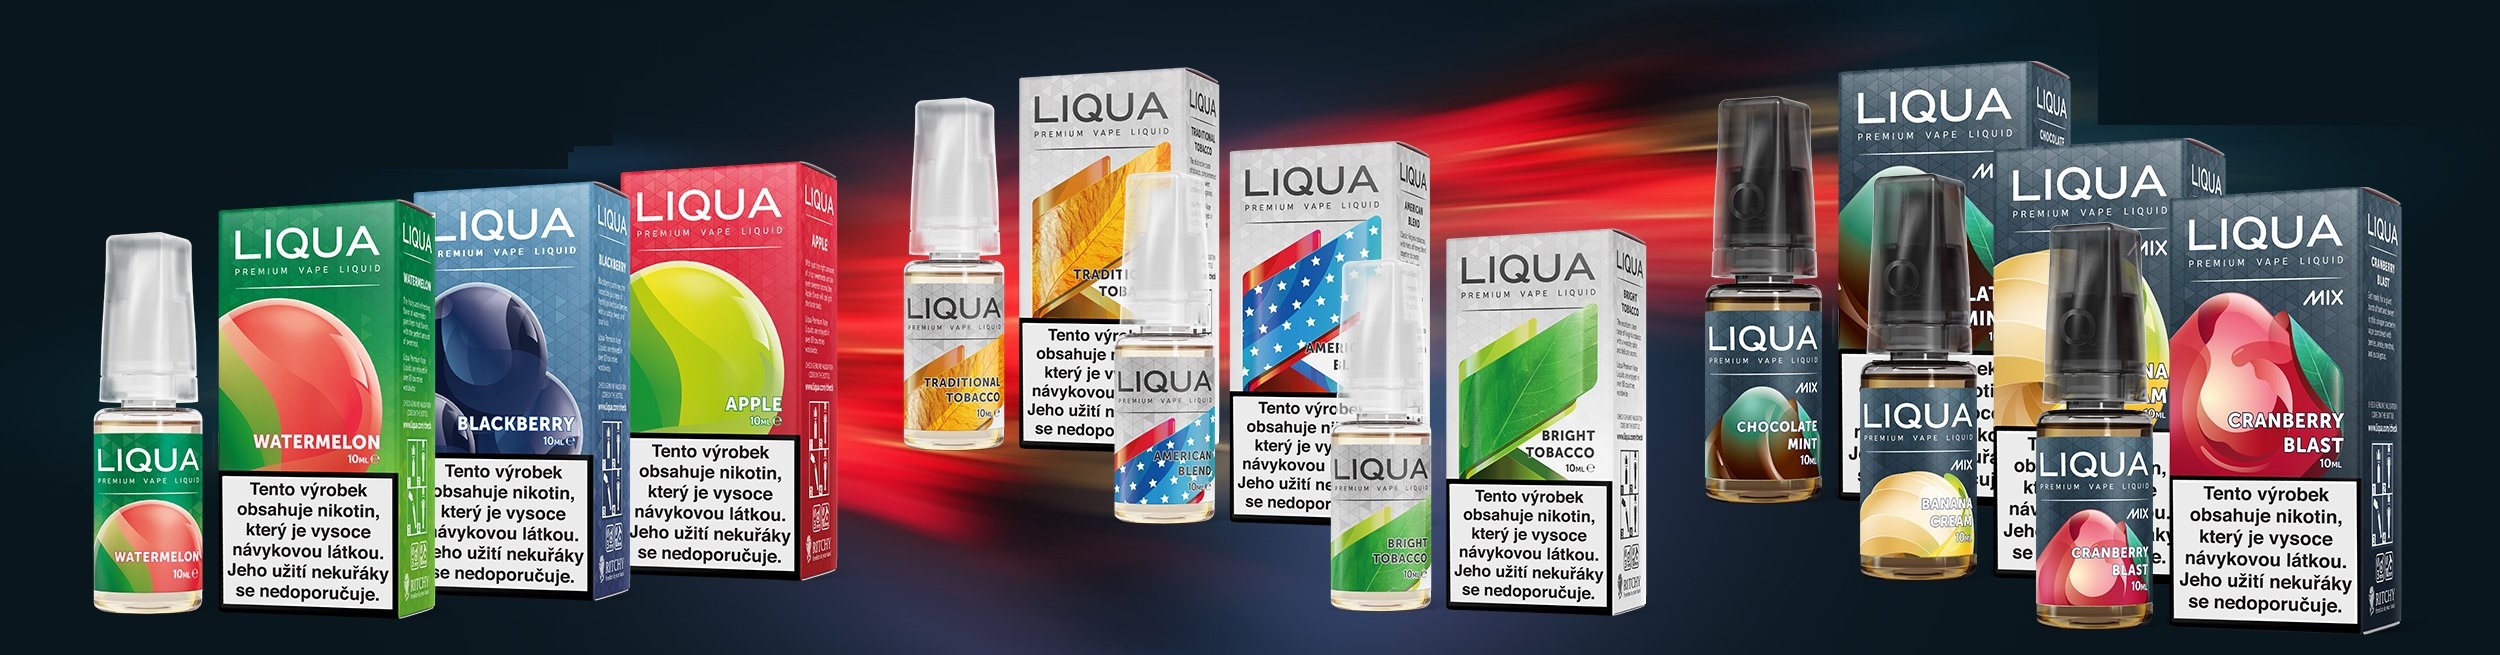 liquidy_liqua